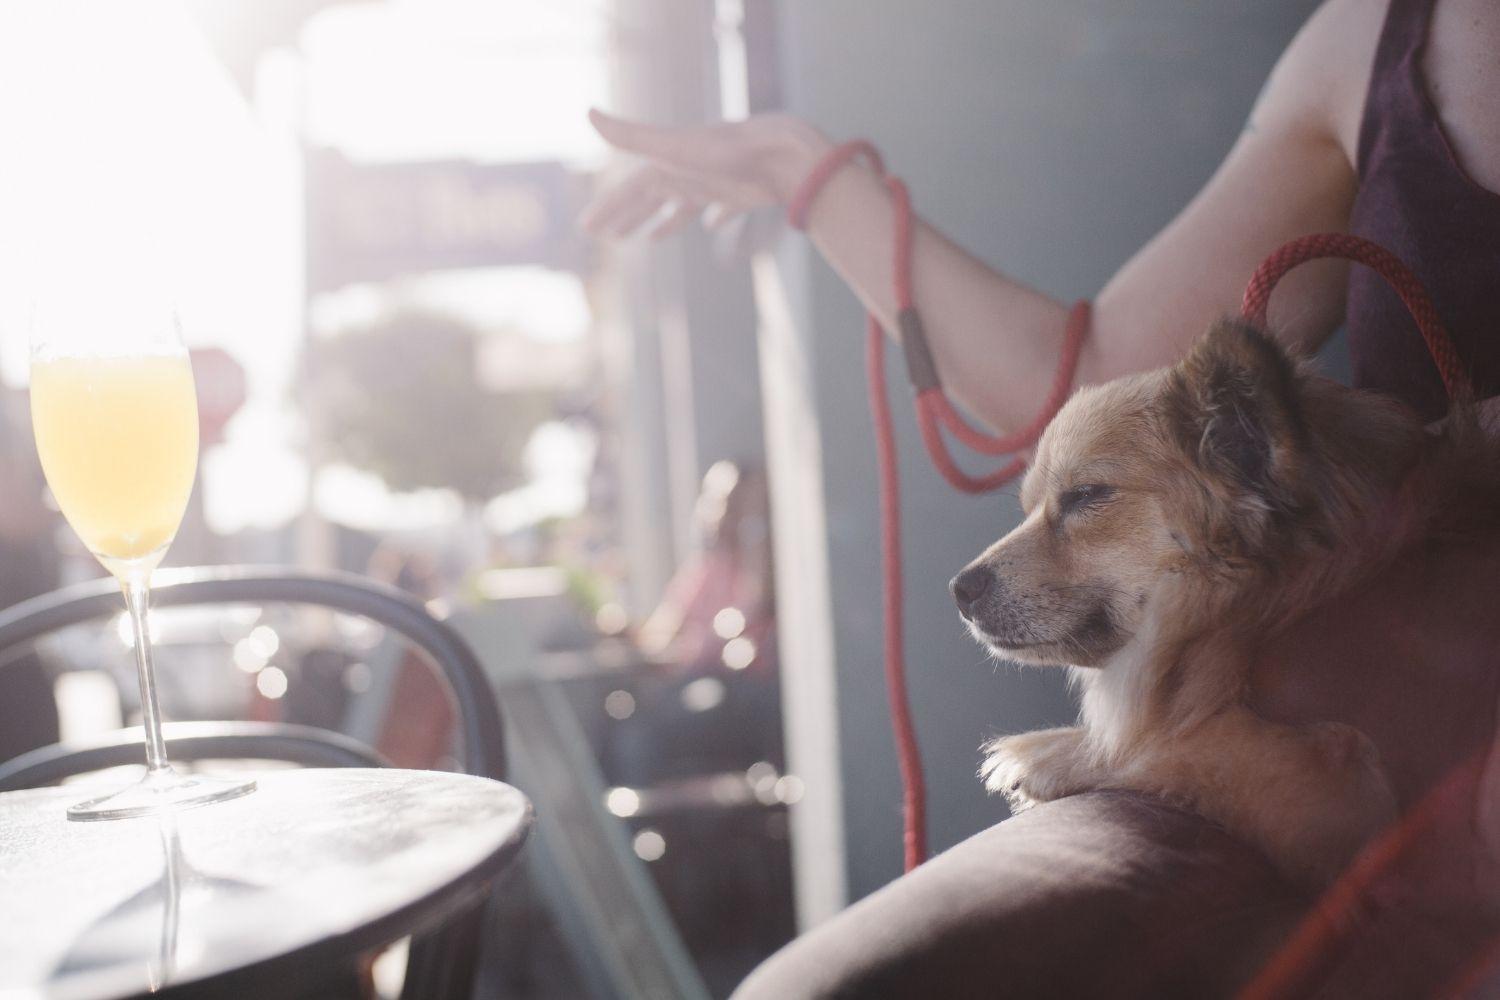 San Diego Dog-friendly restaurant dog on lap